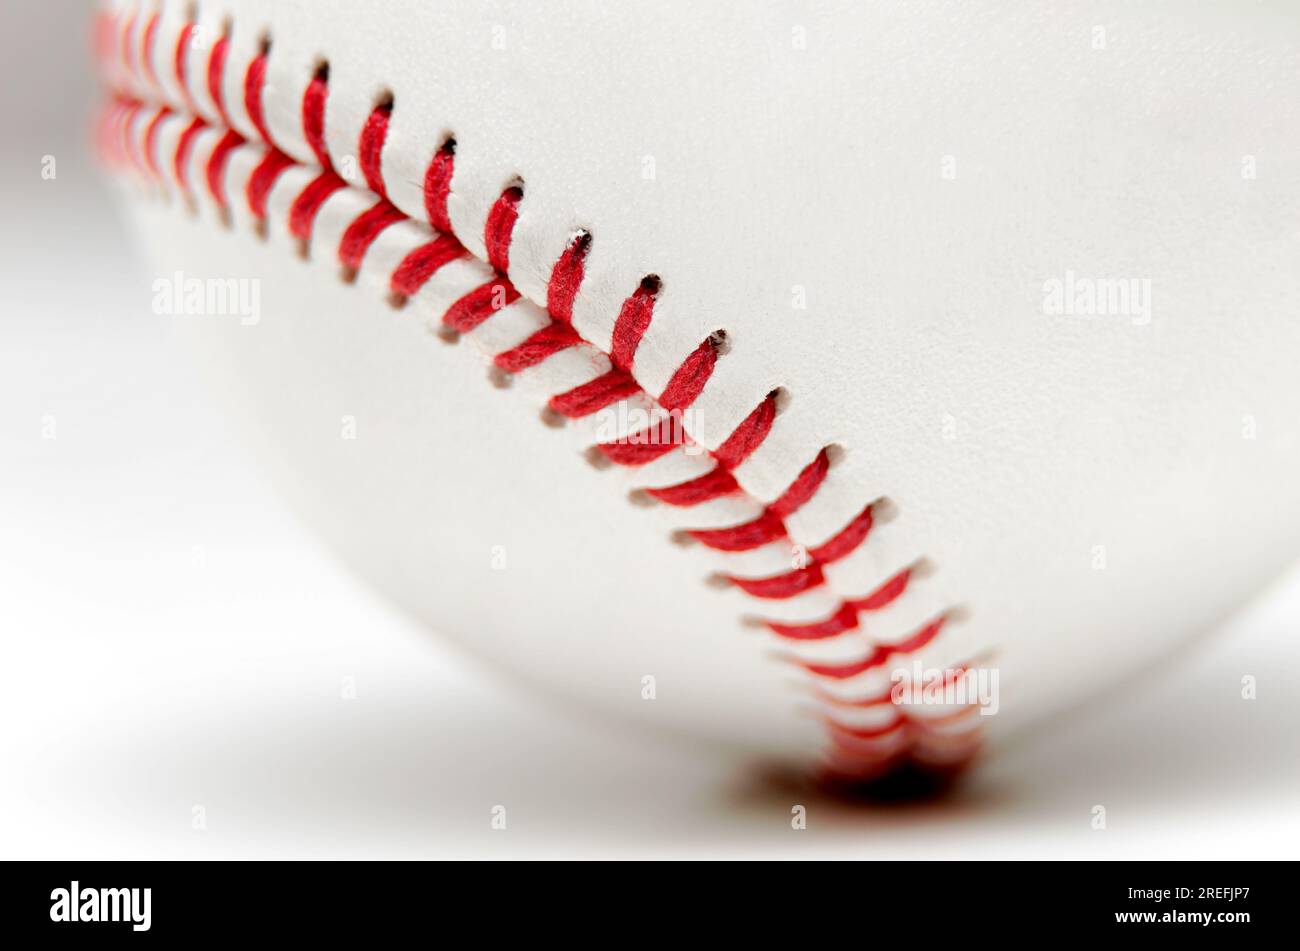 Primer plano de una pelota de béisbol blanca con puntos rojos sobre un fondo blanco Foto de stock